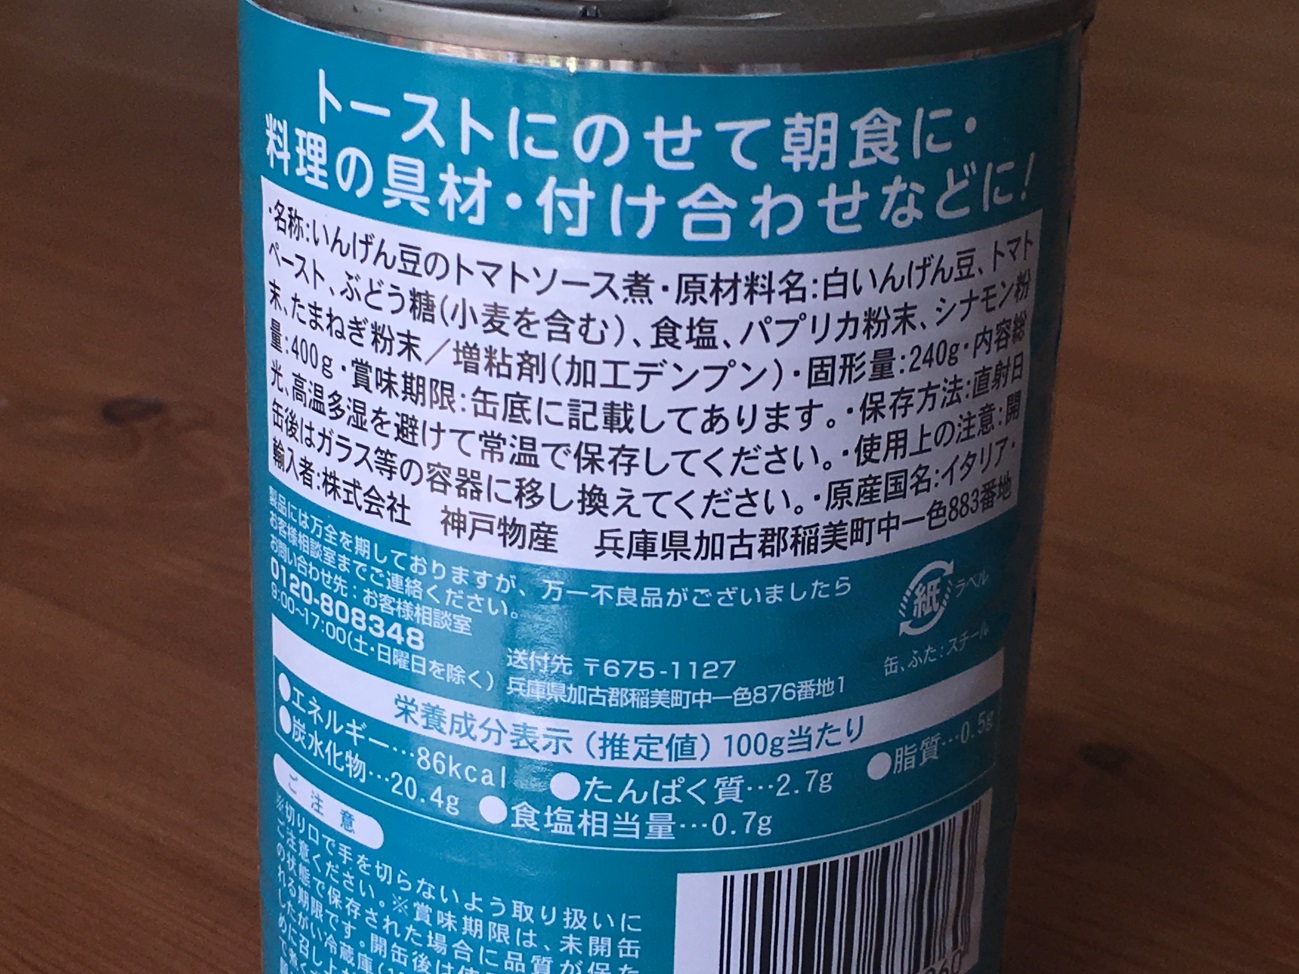 業務スーパーのベイクドビーンズ缶詰の原材料名と原産国名の表記